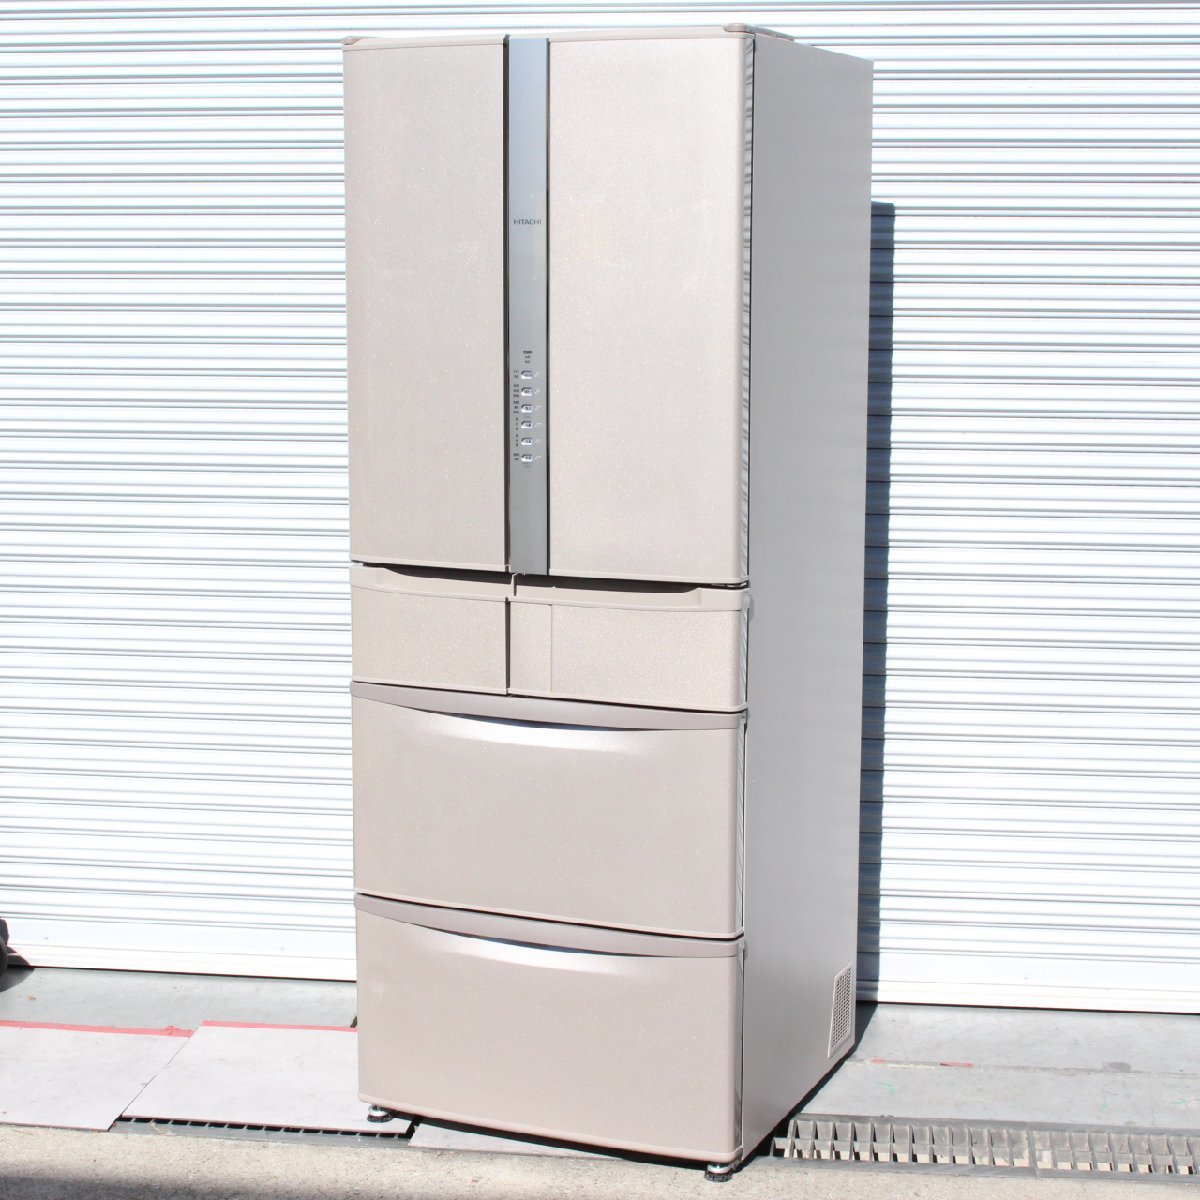 川崎市中原区にて 日立 冷蔵庫 R-F51MG 2020年製 を出張買取させて頂きました。